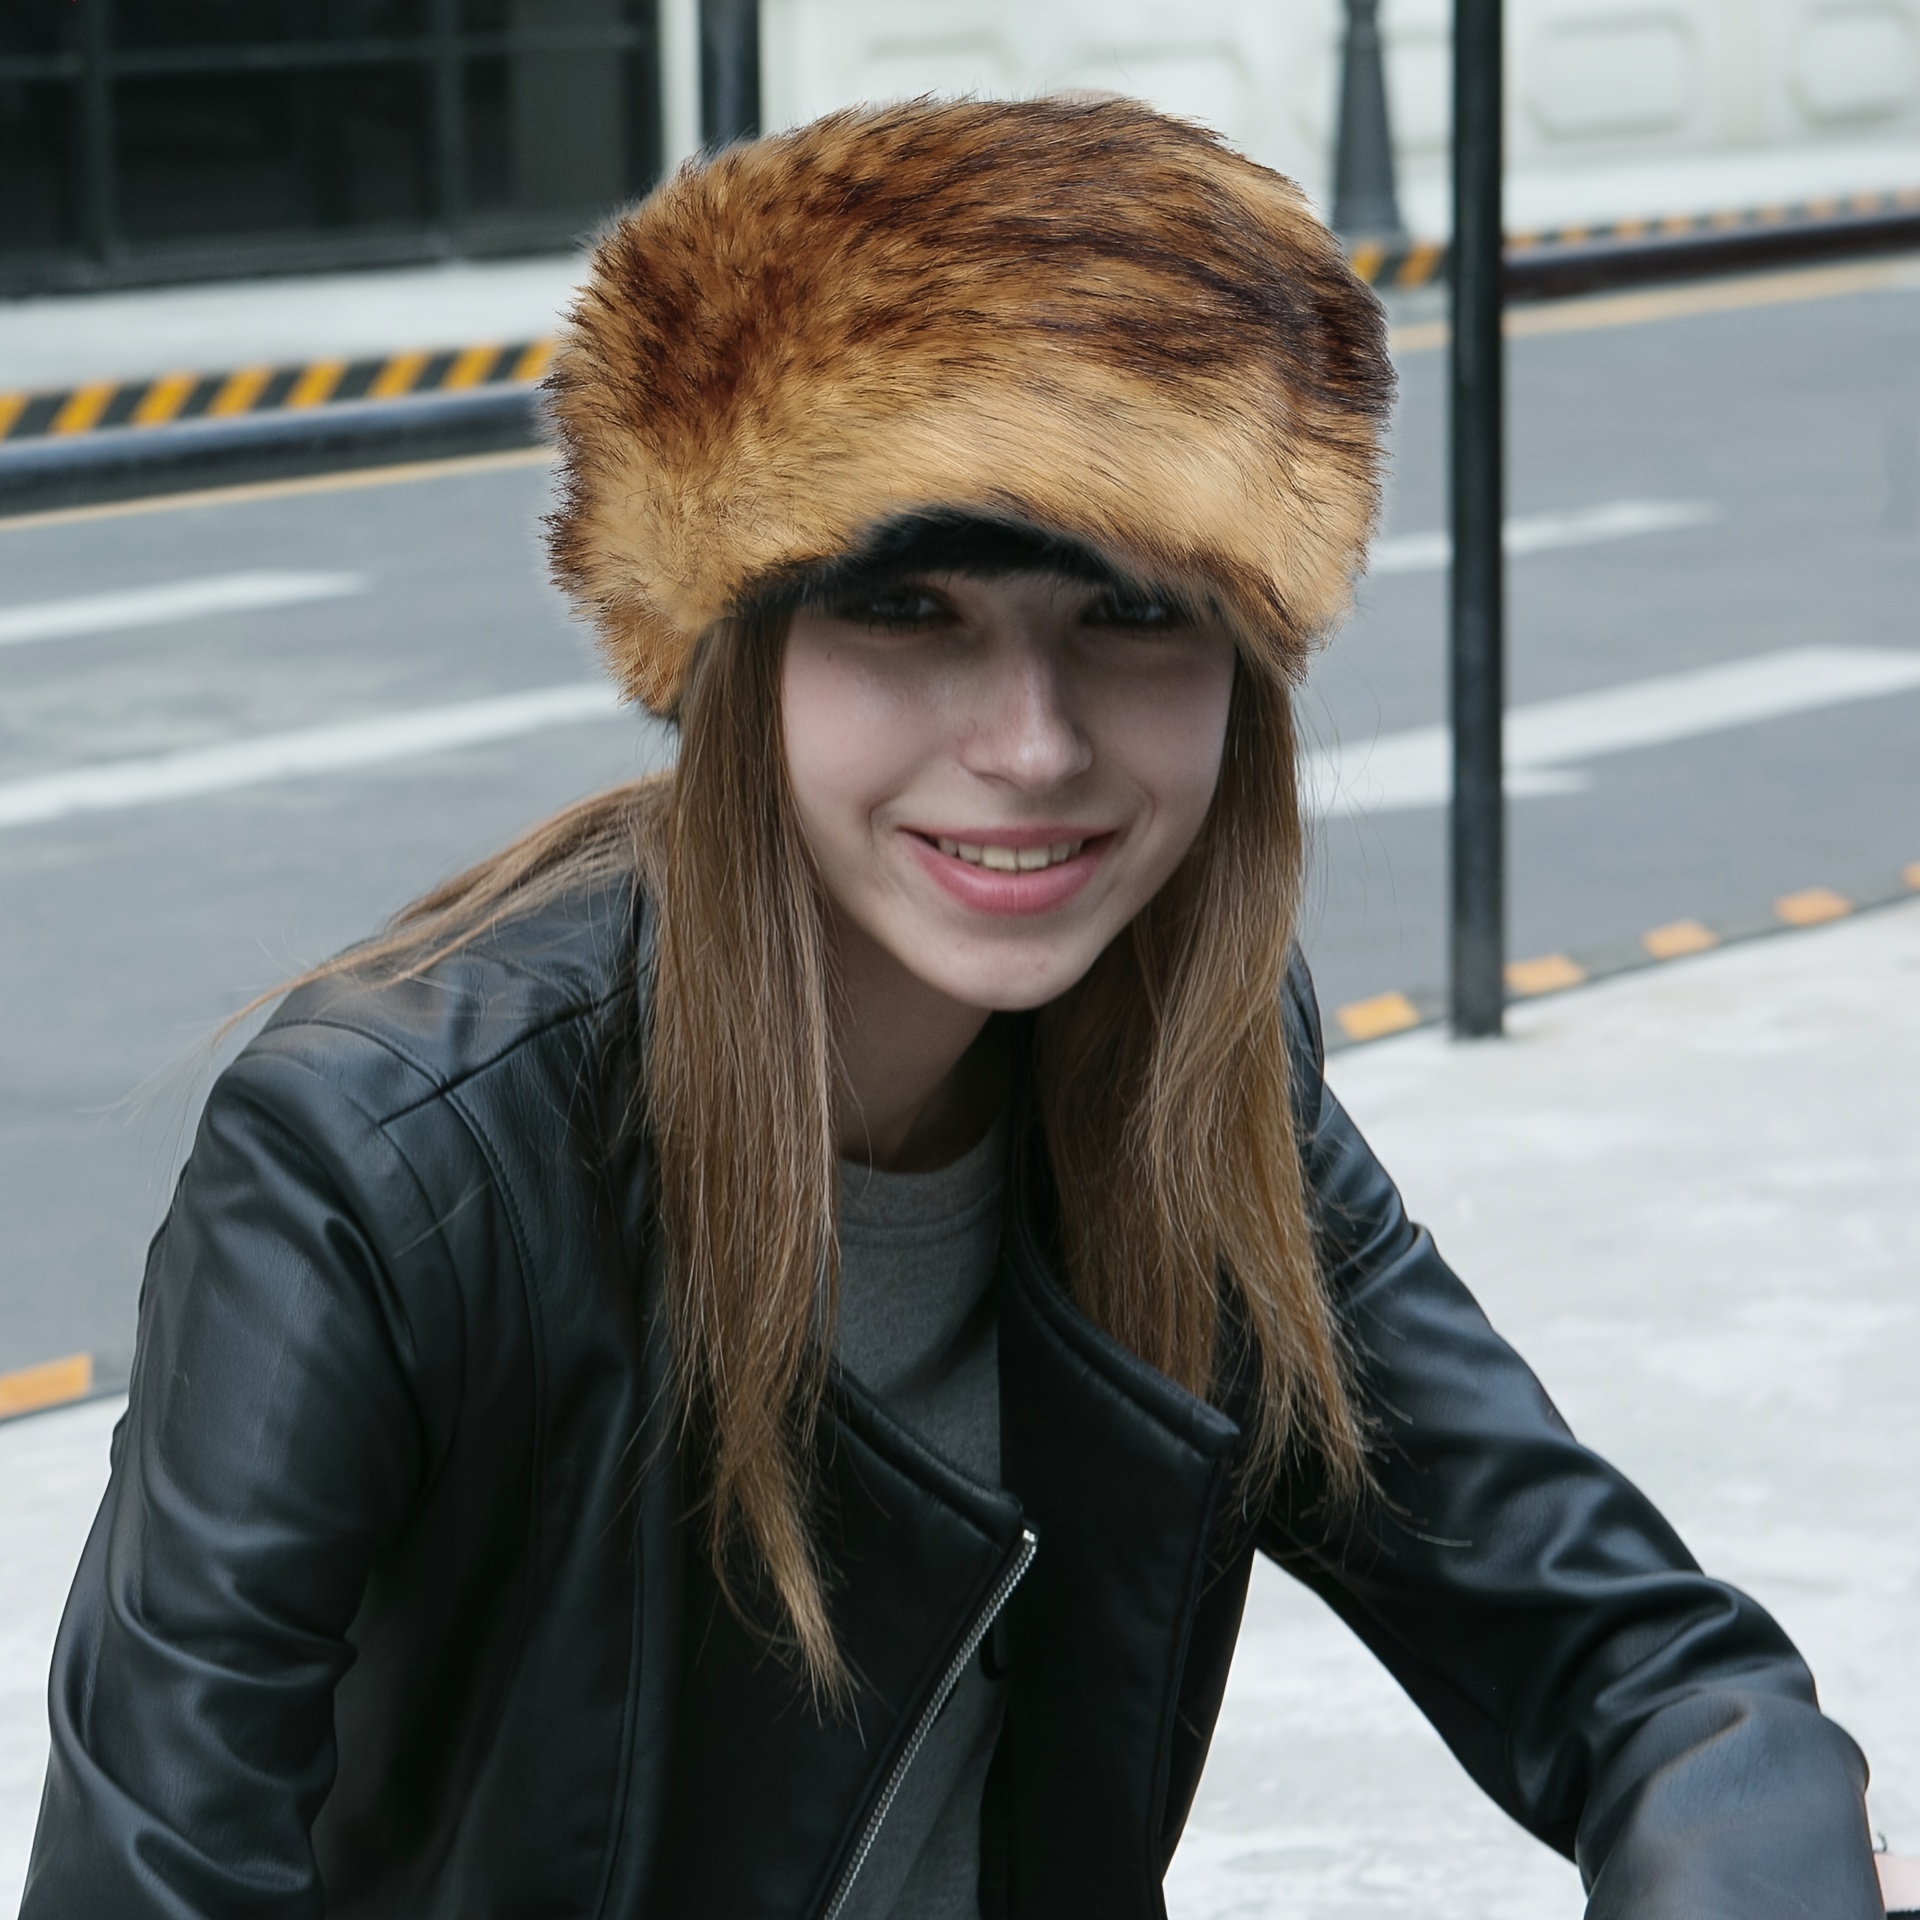 Women's Winter Furry Hat